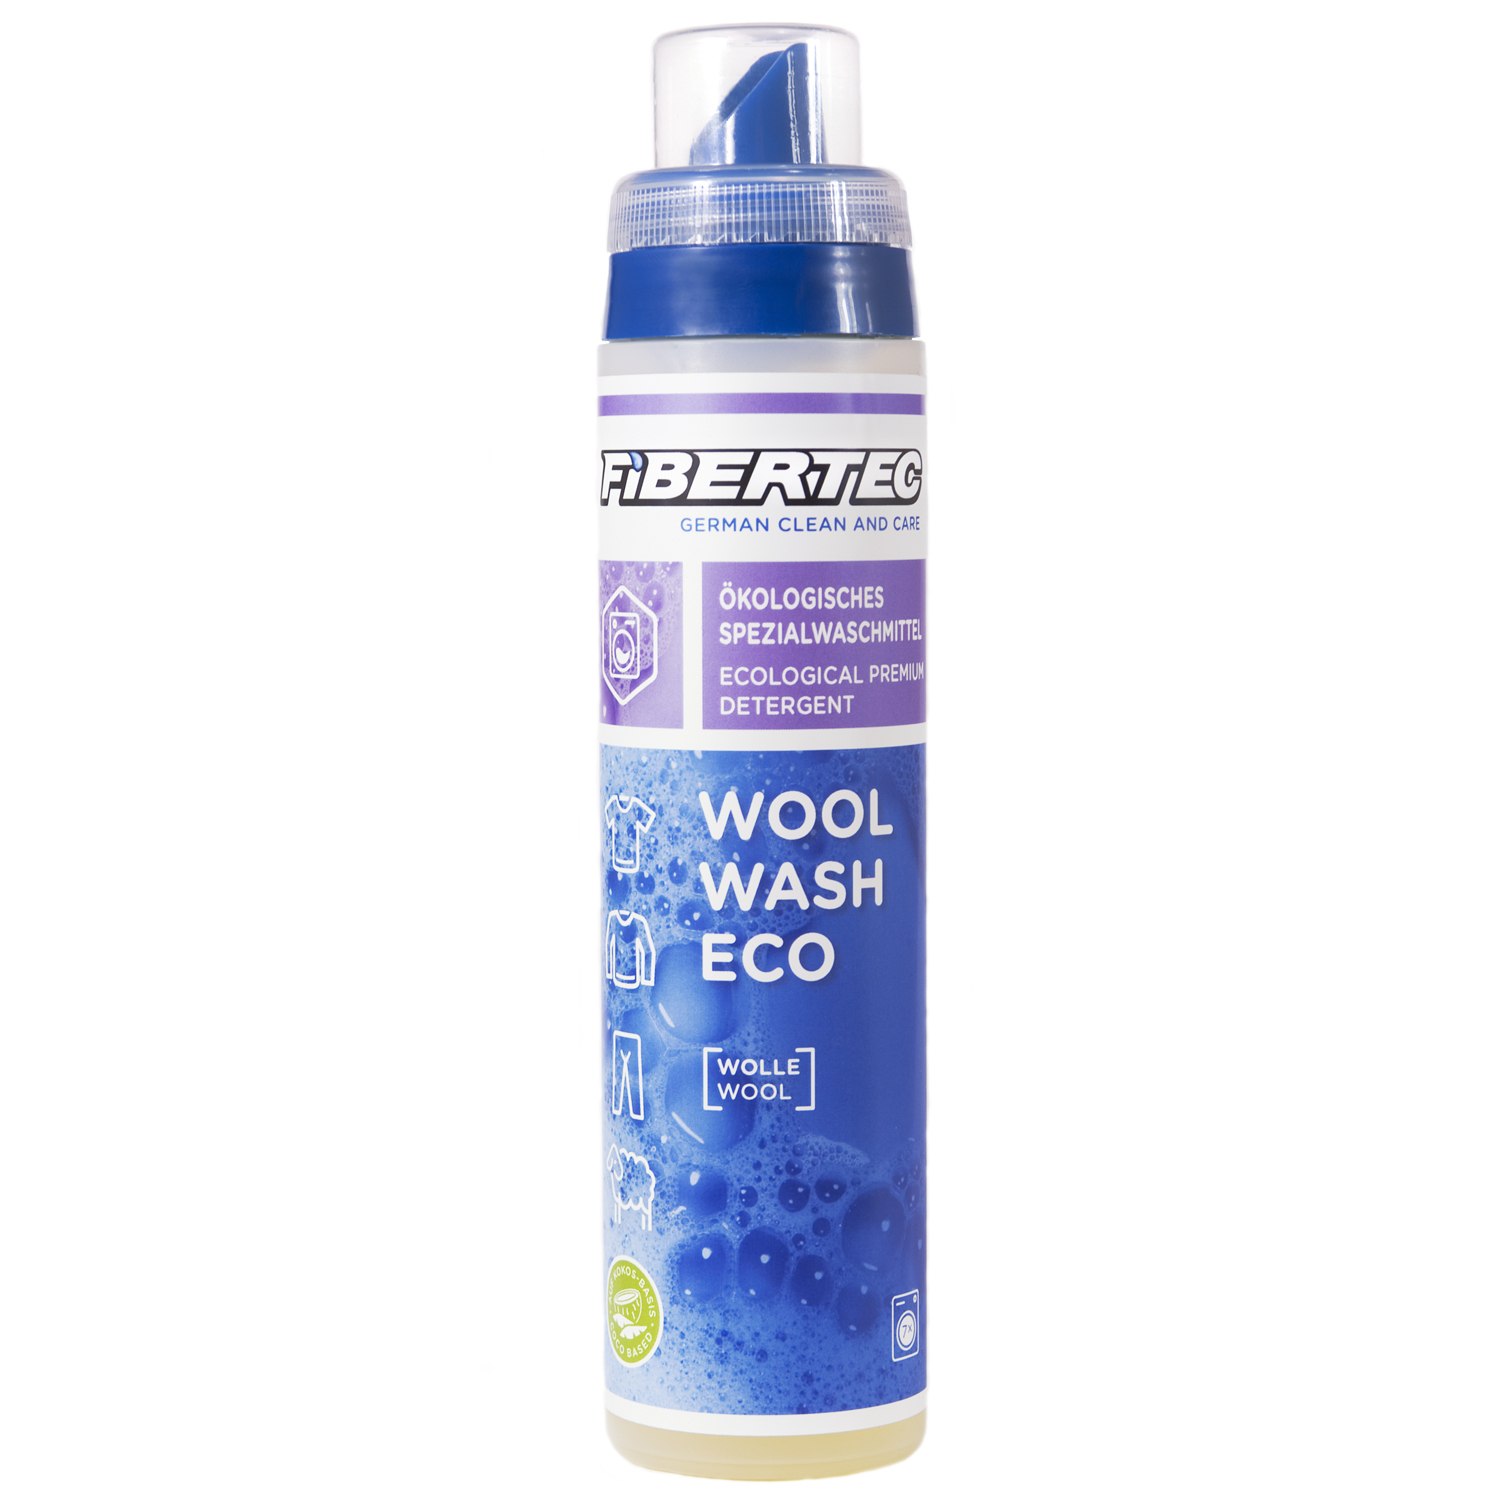 Productfoto van Fibertec Wool Wash Eco Detergent for Wool 250 ml